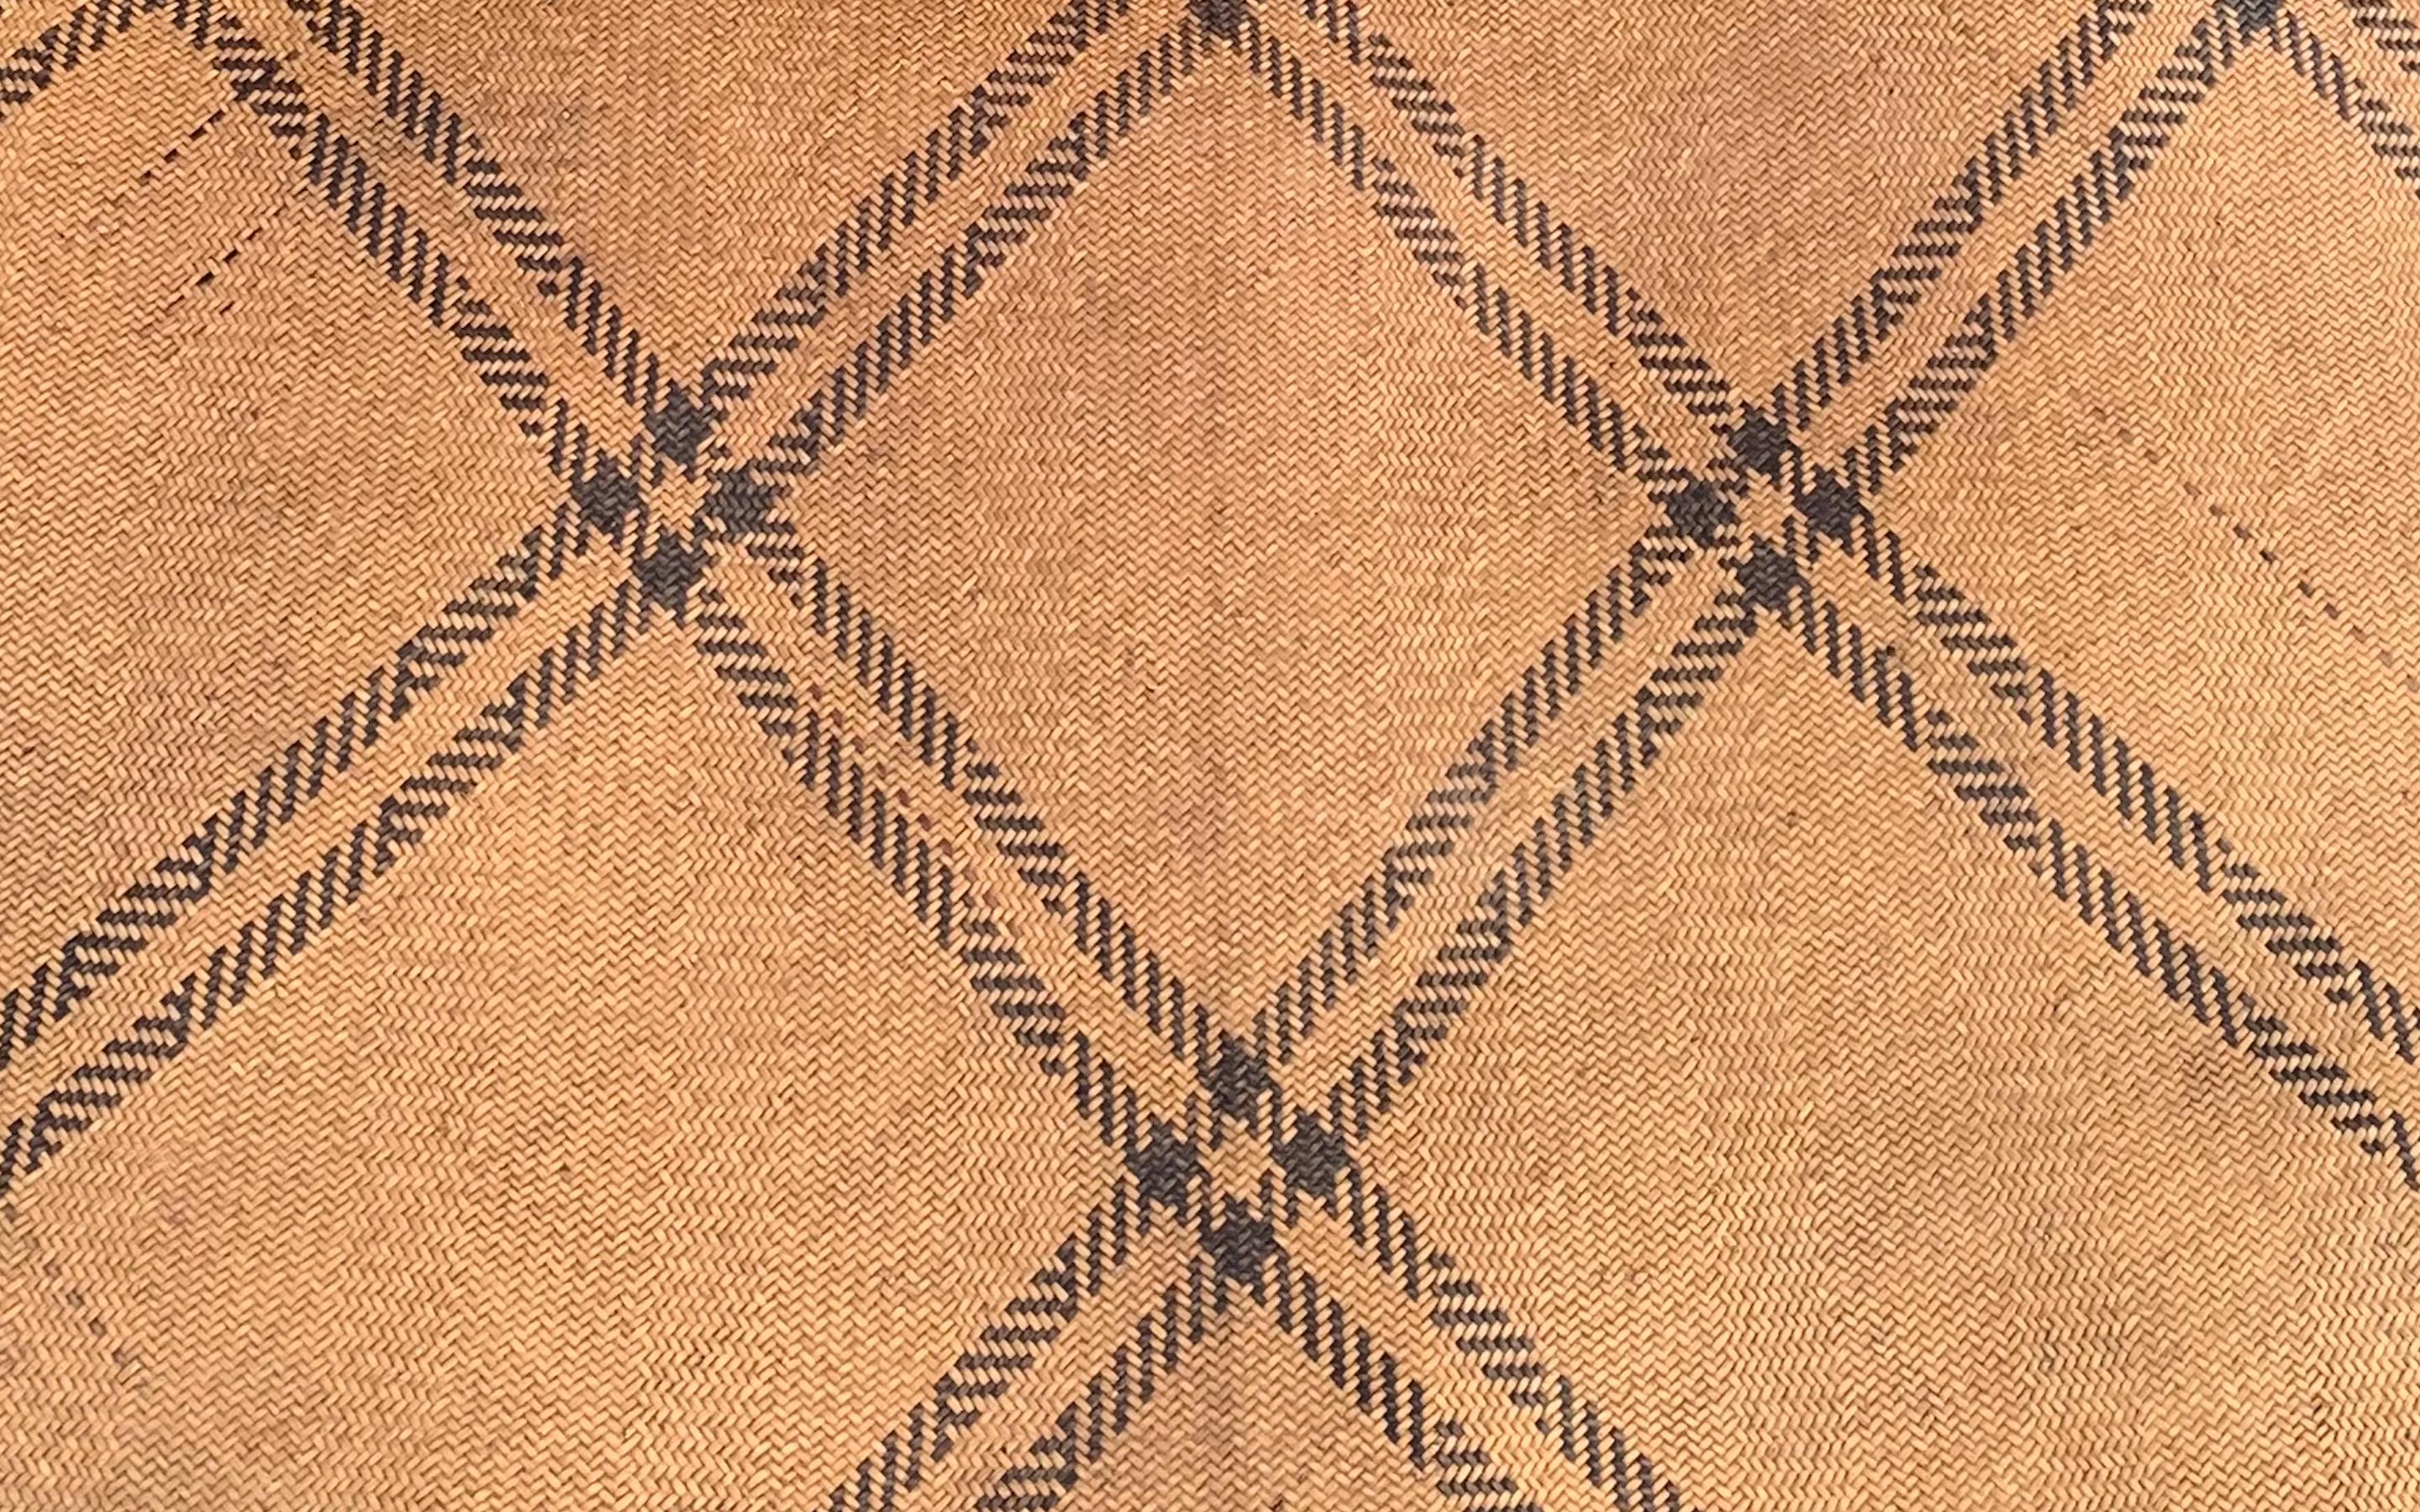 Ce tapis de sol occupait autrefois une longue maison tribale de la tribu Dayak de Bornéo. Il est fabriqué à partir de fibres de rotin tissées, teintes et de couleur naturelle, et présente des fibres noires en diagonale. 

Dimension : Hauteur 220cm